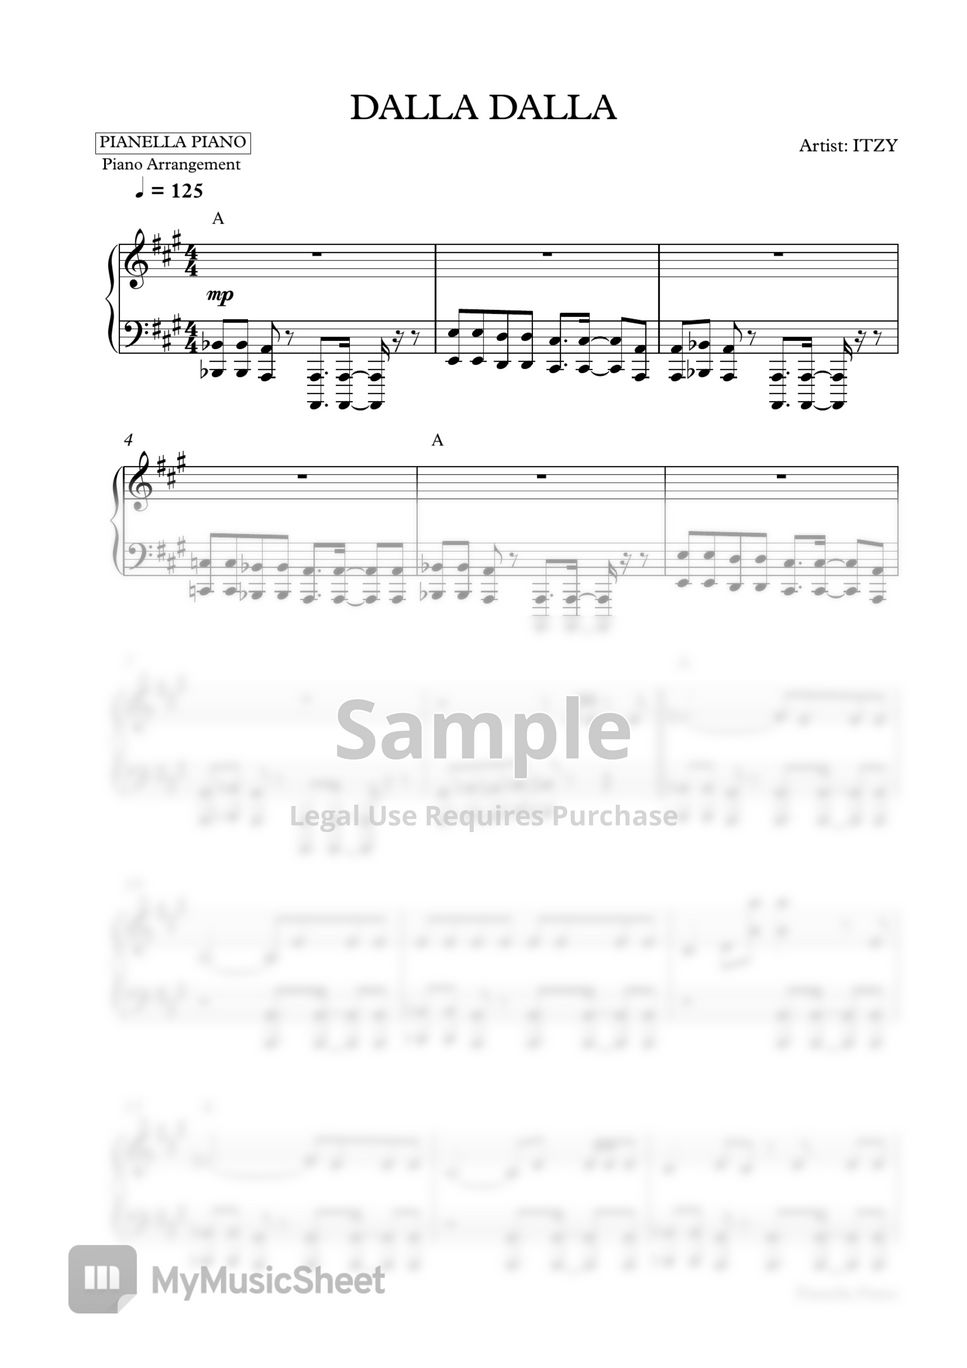 ITZY - DALLA DALLA (Piano Sheet) by Pianella Piano